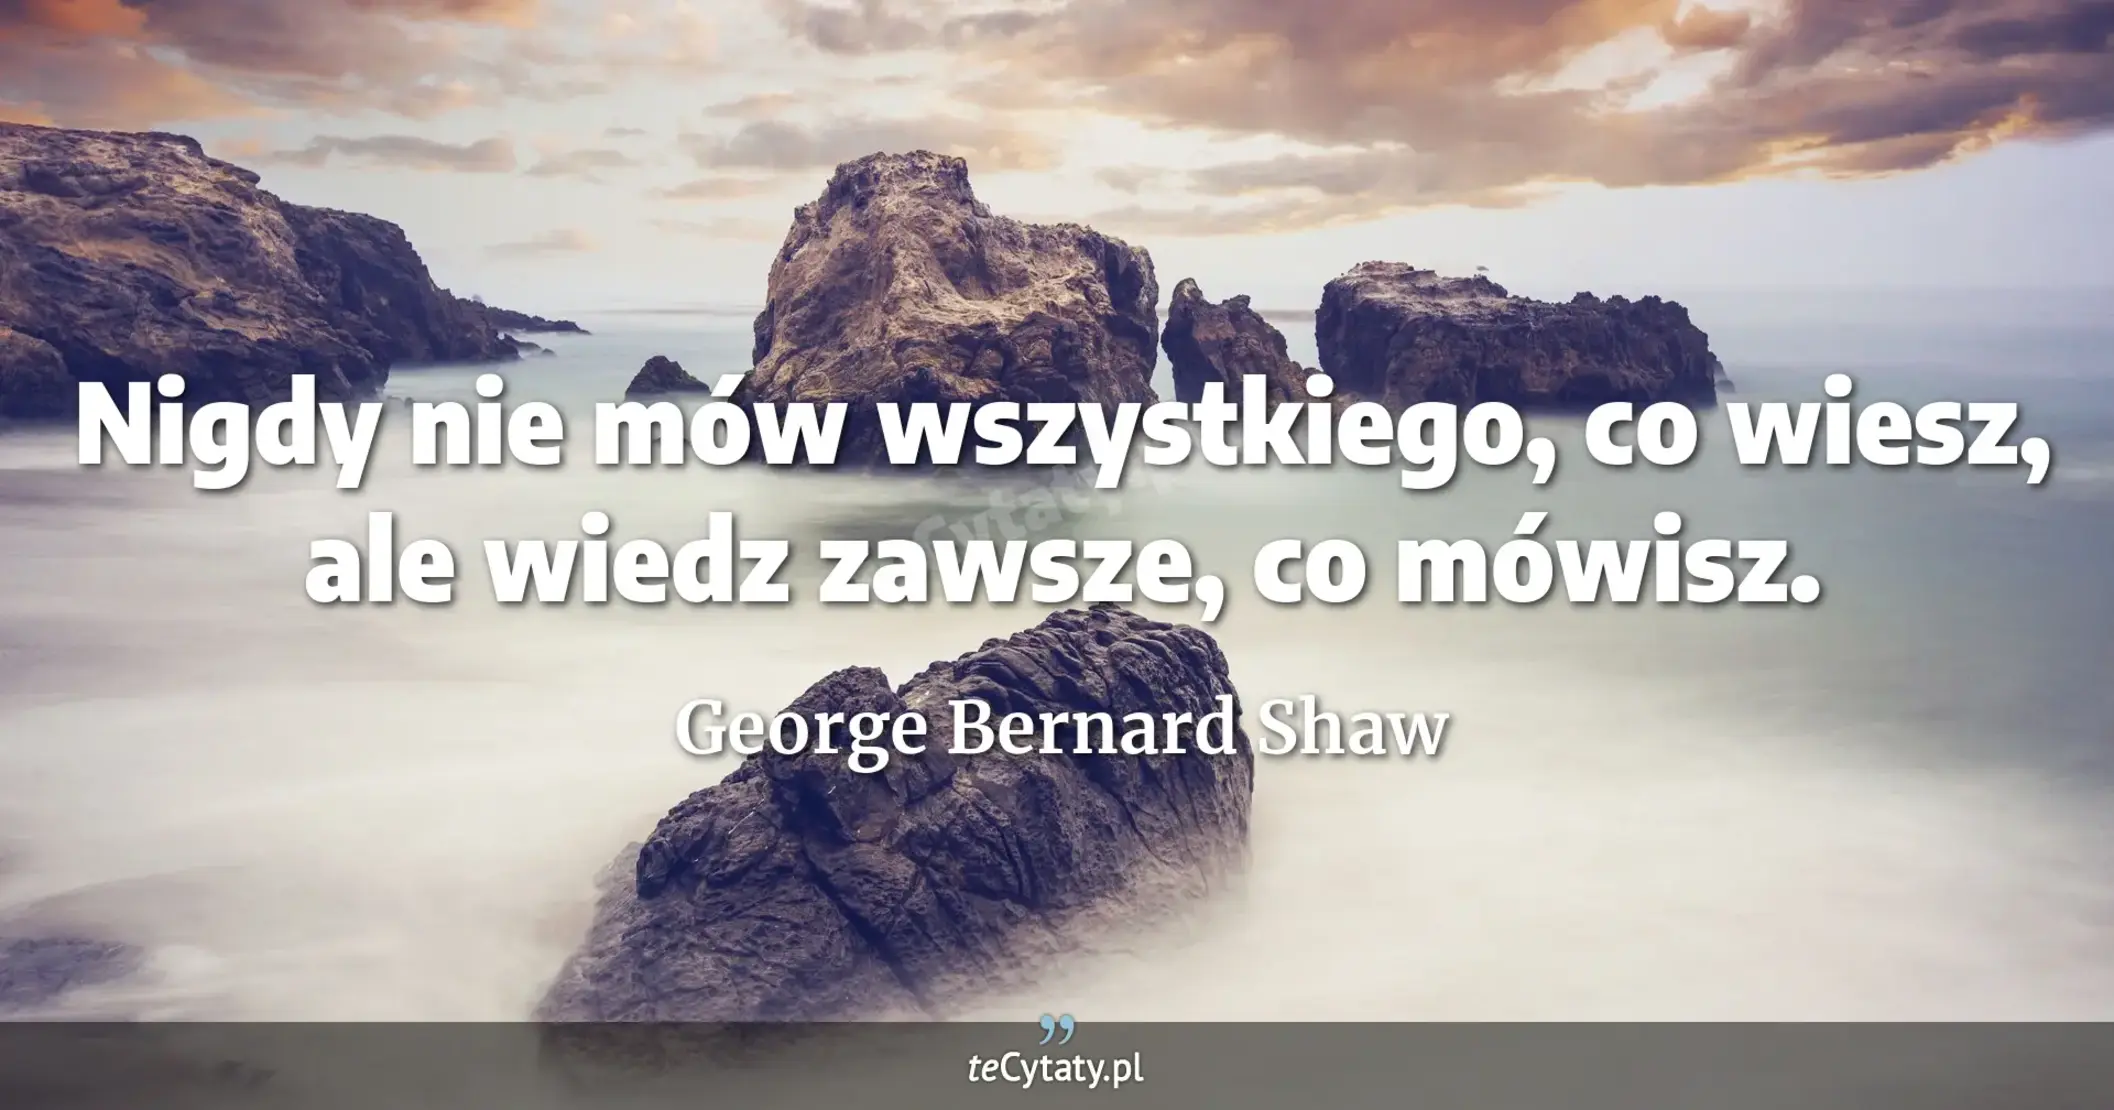 Nigdy nie mów wszystkiego, co wiesz, ale wiedz zawsze, co mówisz. - George Bernard Shaw